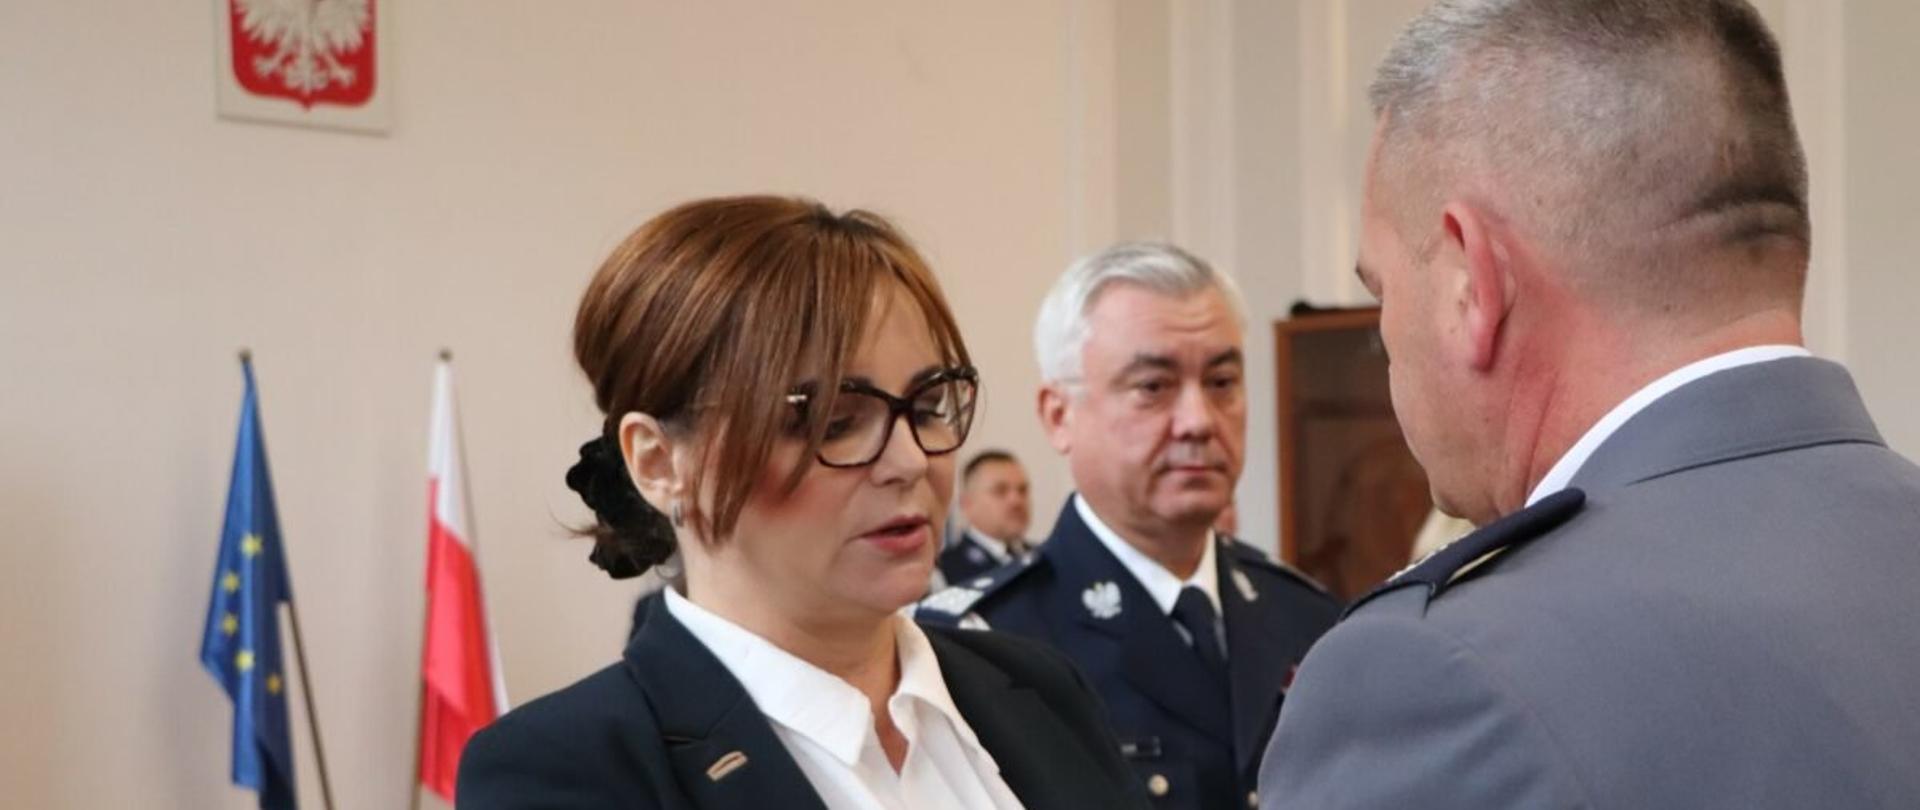 Wicewojewoda podkarpacki Jolanta Sawicka wręcza odznaczenie policjantowi